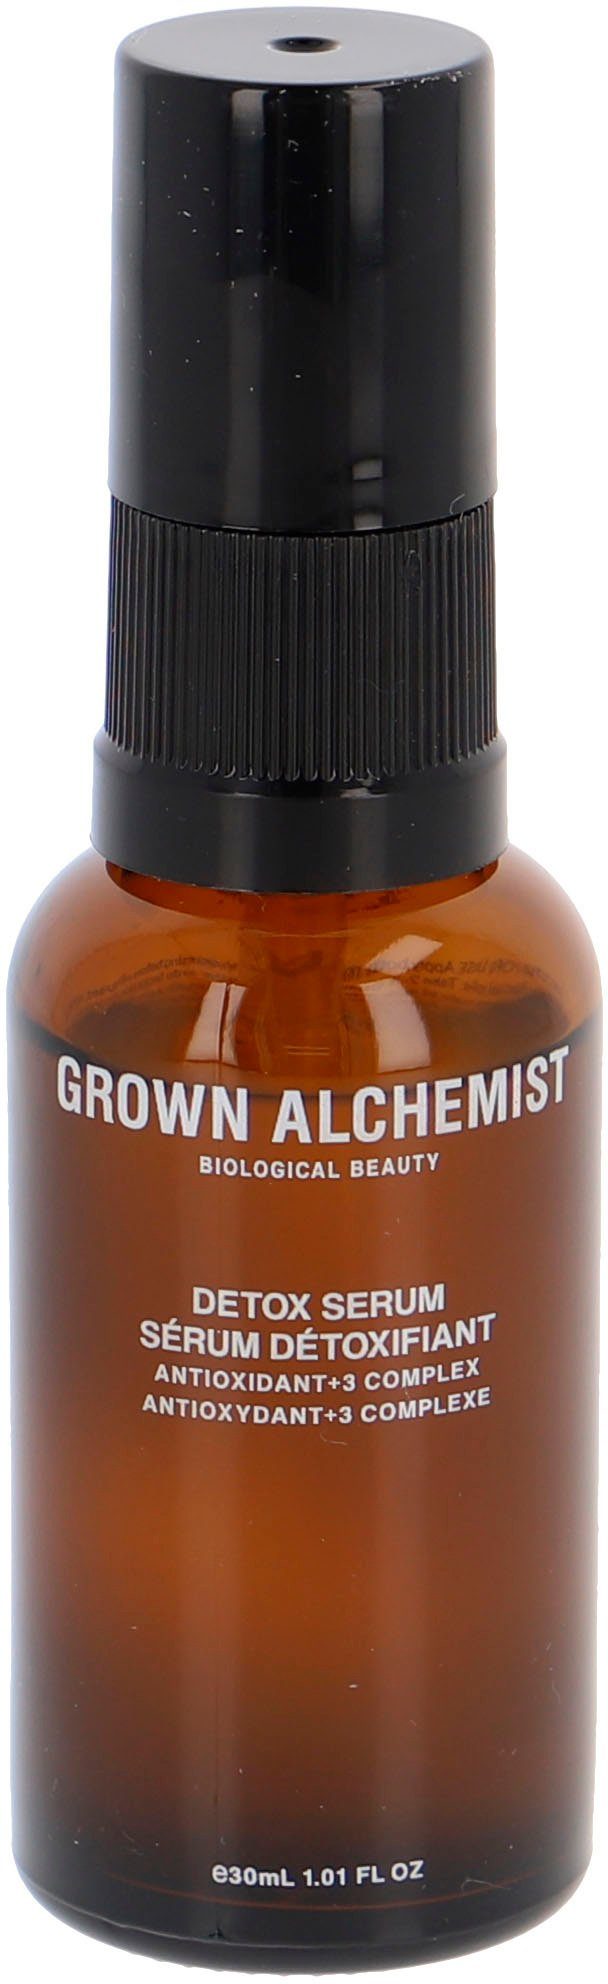 ALCHEMIST 3 Complex Detox Antioxidant+ Serum GROWN Gesichtsserum